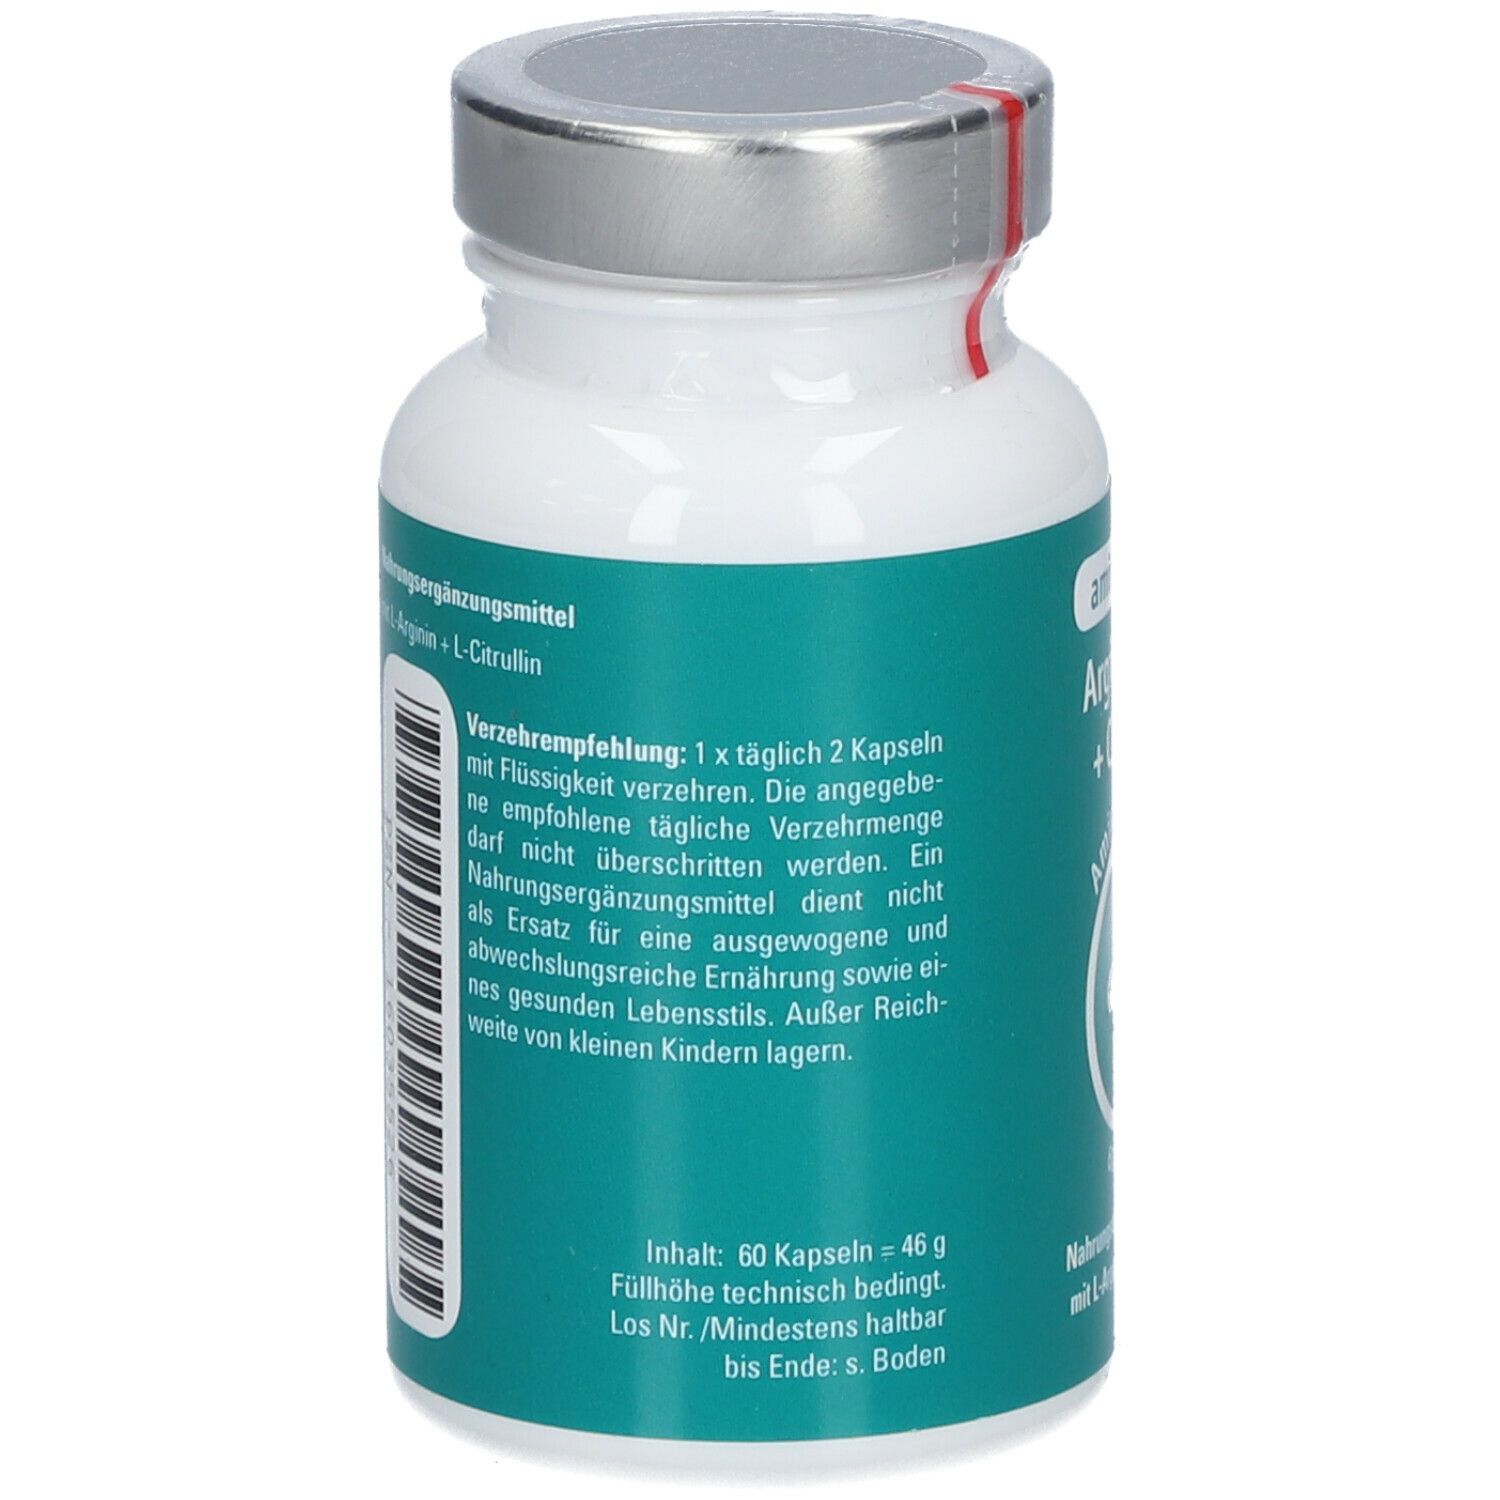 Aminoplus ® Arginine + Citrulline